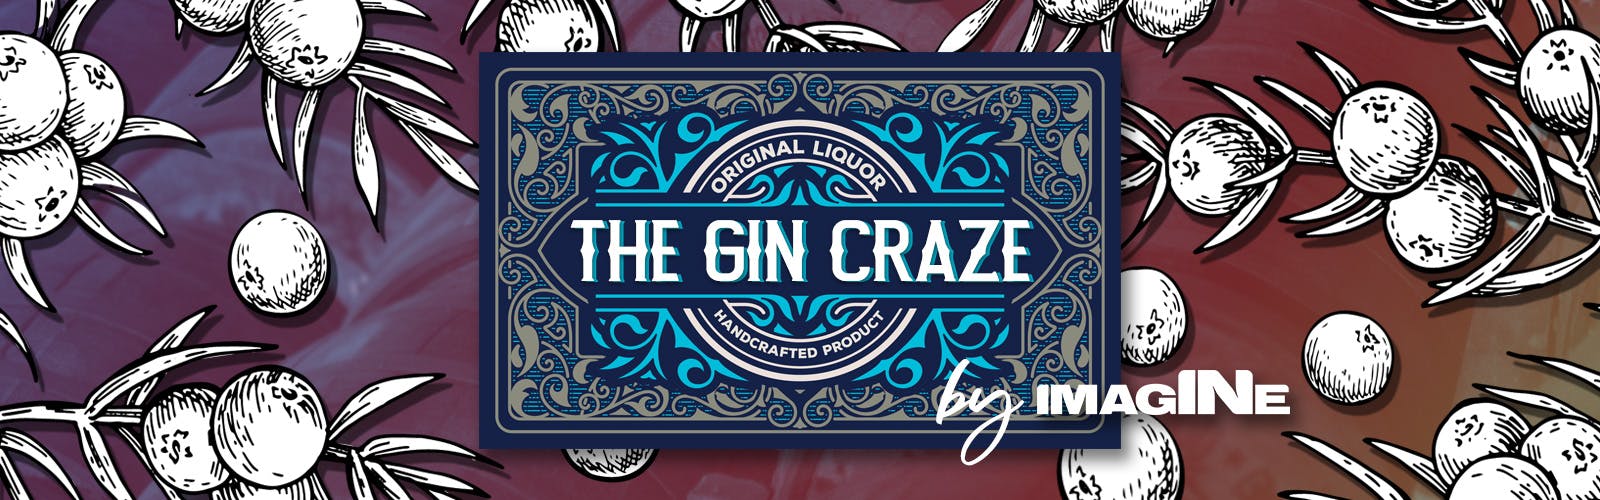 Doświadczenie Gin Craze w Londynie z Gin Palace i wycieczką po destylarni